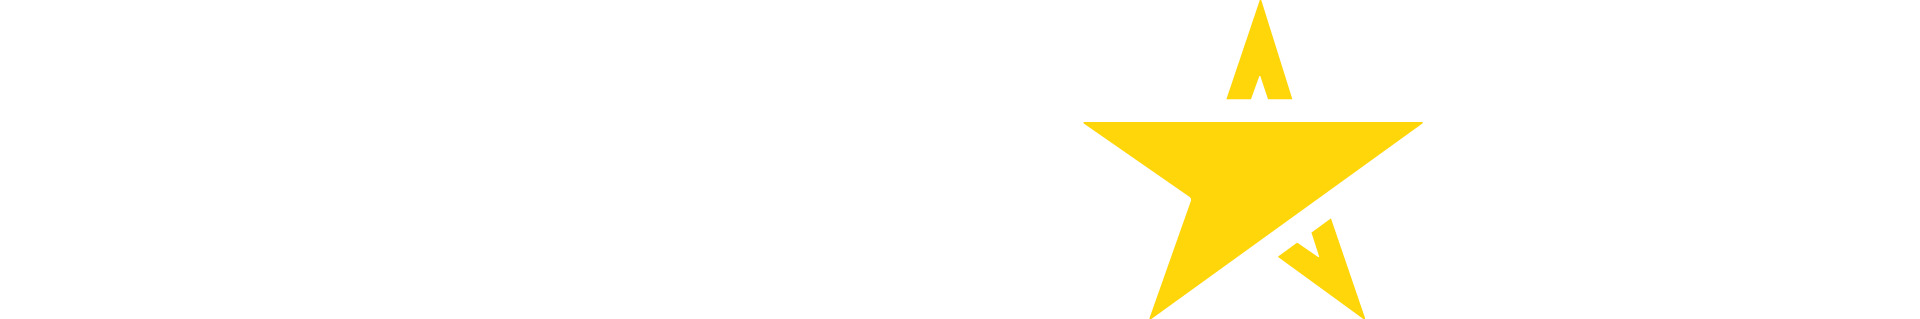 Logotipo do site Estrela Bet